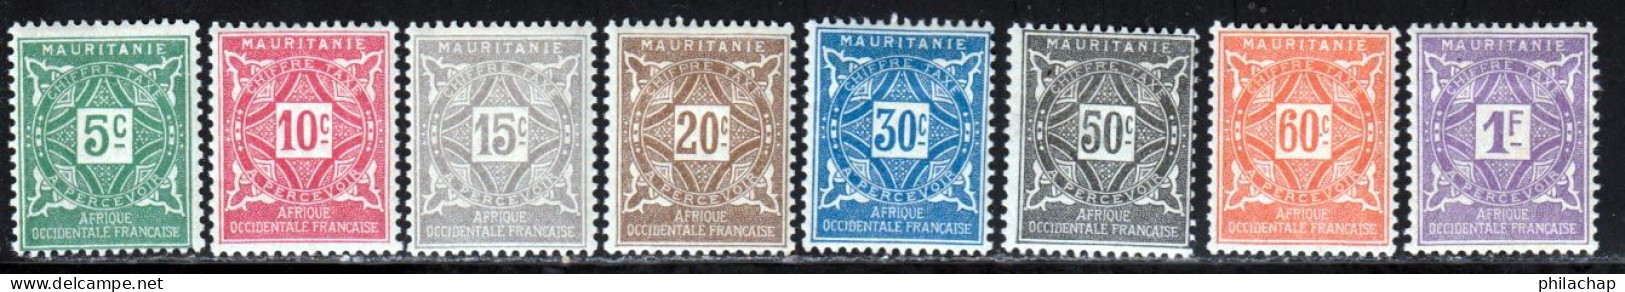 Mauritanie Taxe 1914 Yvert 17 / 24 * TB Charniere(s) - Neufs